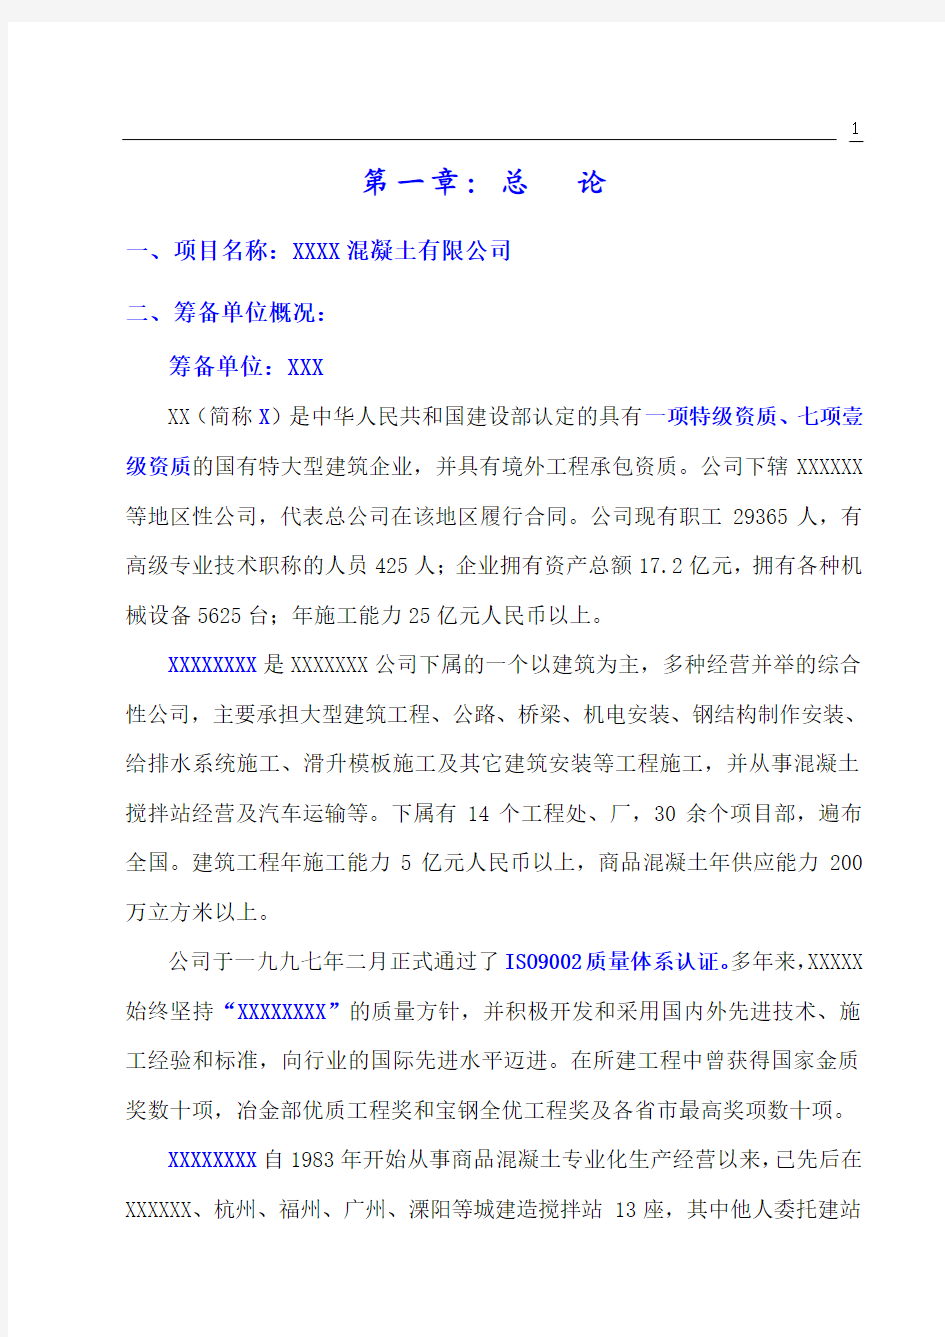 重庆某公司设立混凝土搅拌站可行性报告(正式)_secret